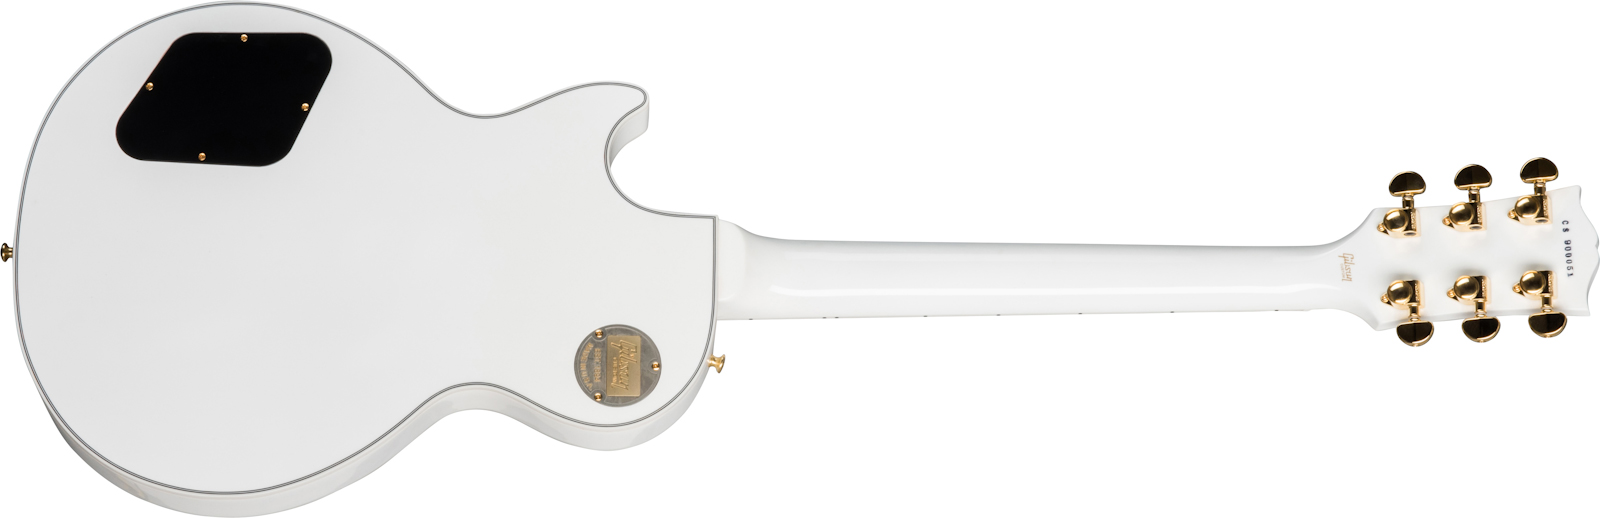 Gibson Custom Shop Les Paul Custom 2019 2h Ht Eb - Alpine White - Enkel gesneden elektrische gitaar - Variation 1